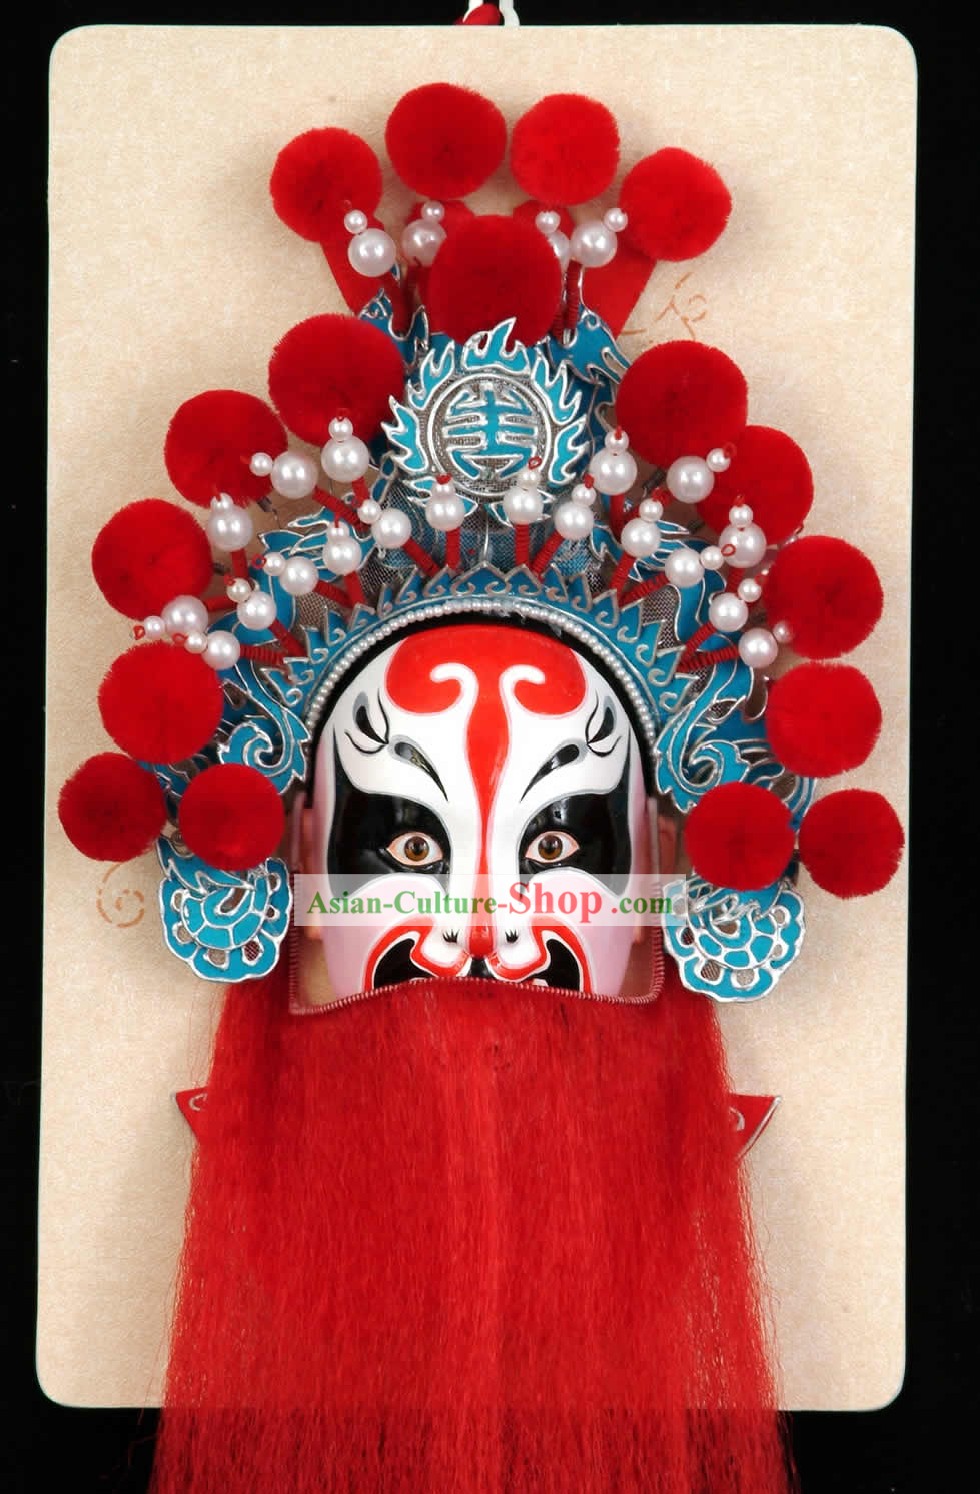 Hechos a mano la Ópera de Pekín Decoración Máscara colgantes - Meng Liang